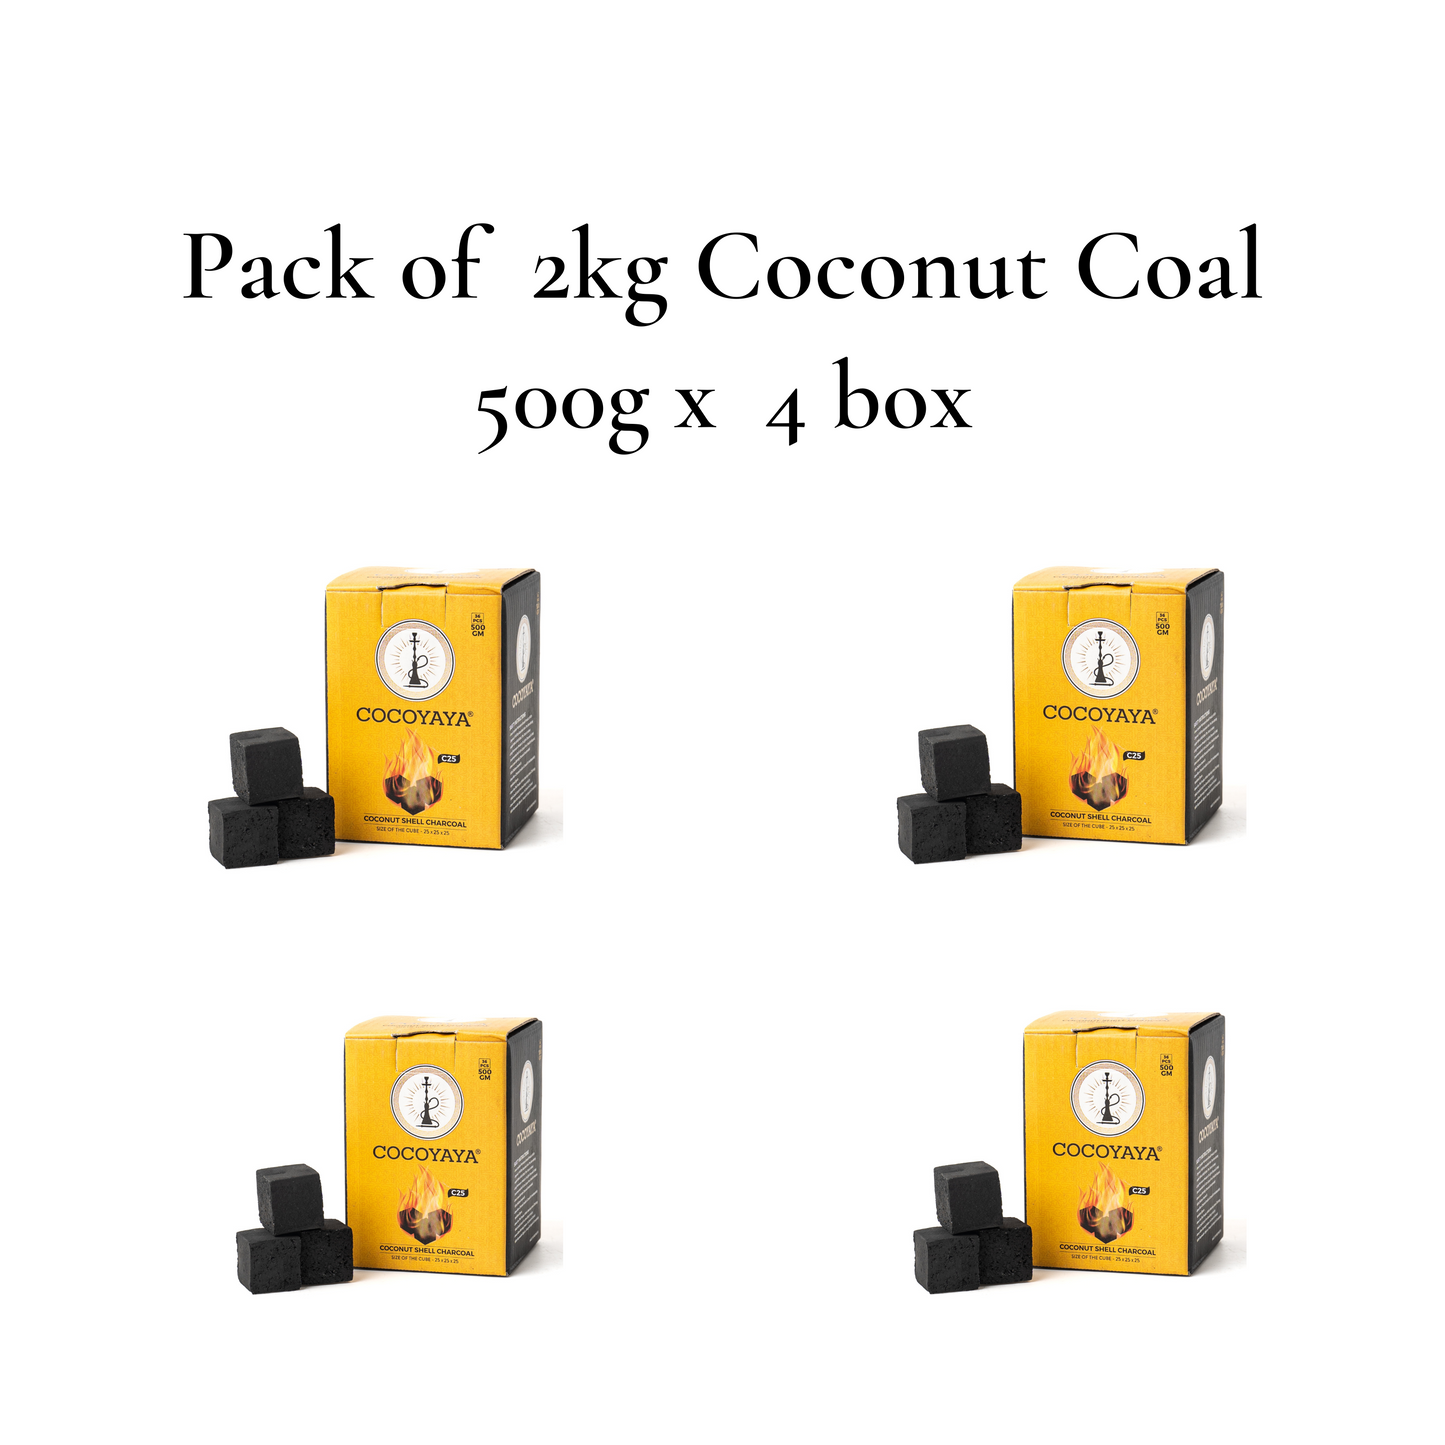 COCOYAYA Coconut Coal for Hookah (Pack of 2kg) - 500g x 4